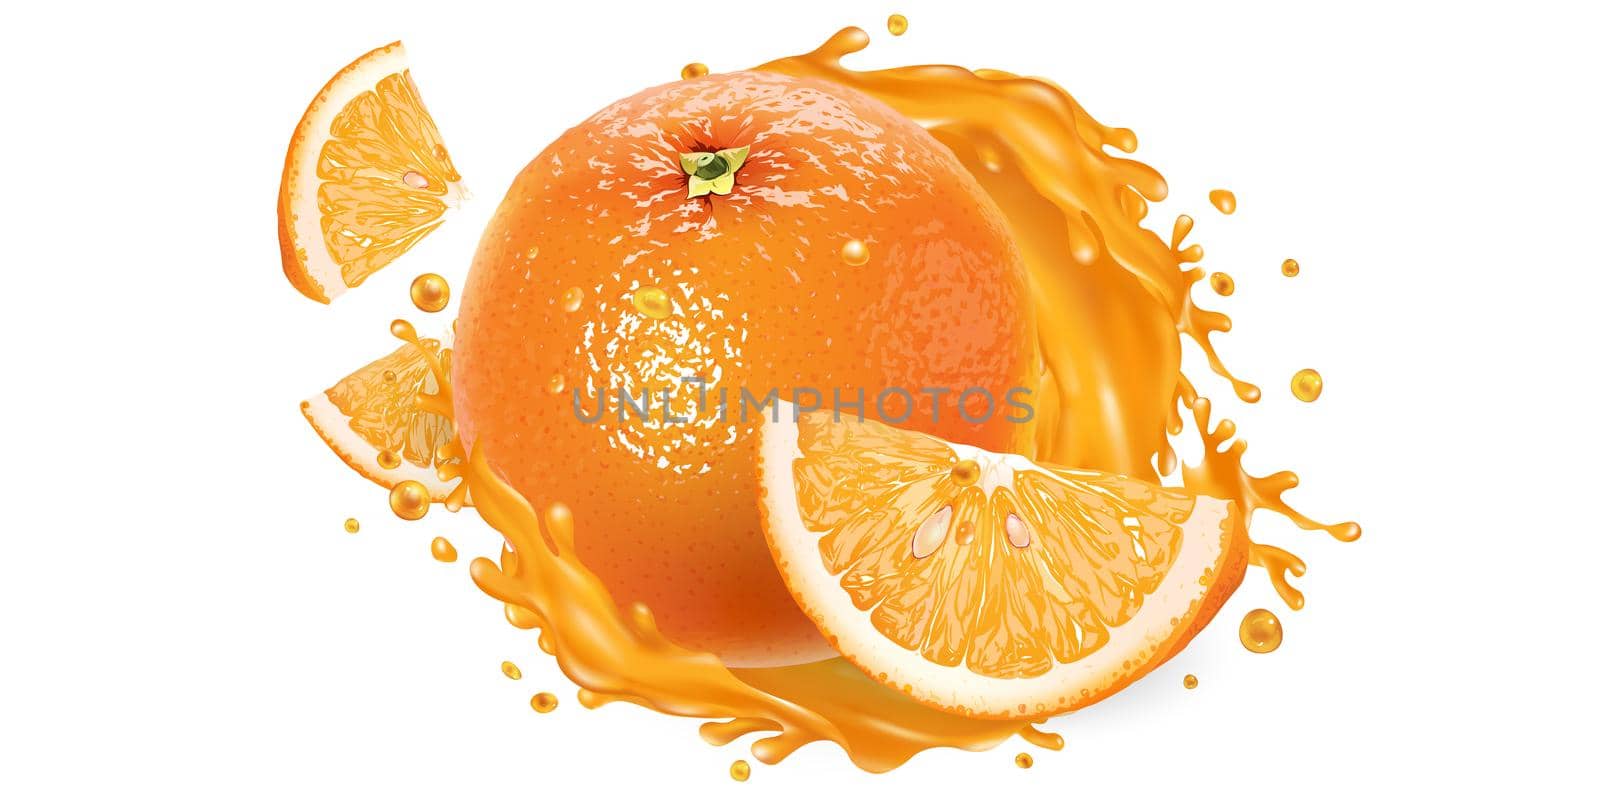 Fresh orange and a splash of fruit juice on a white background. Realistic style illustration.